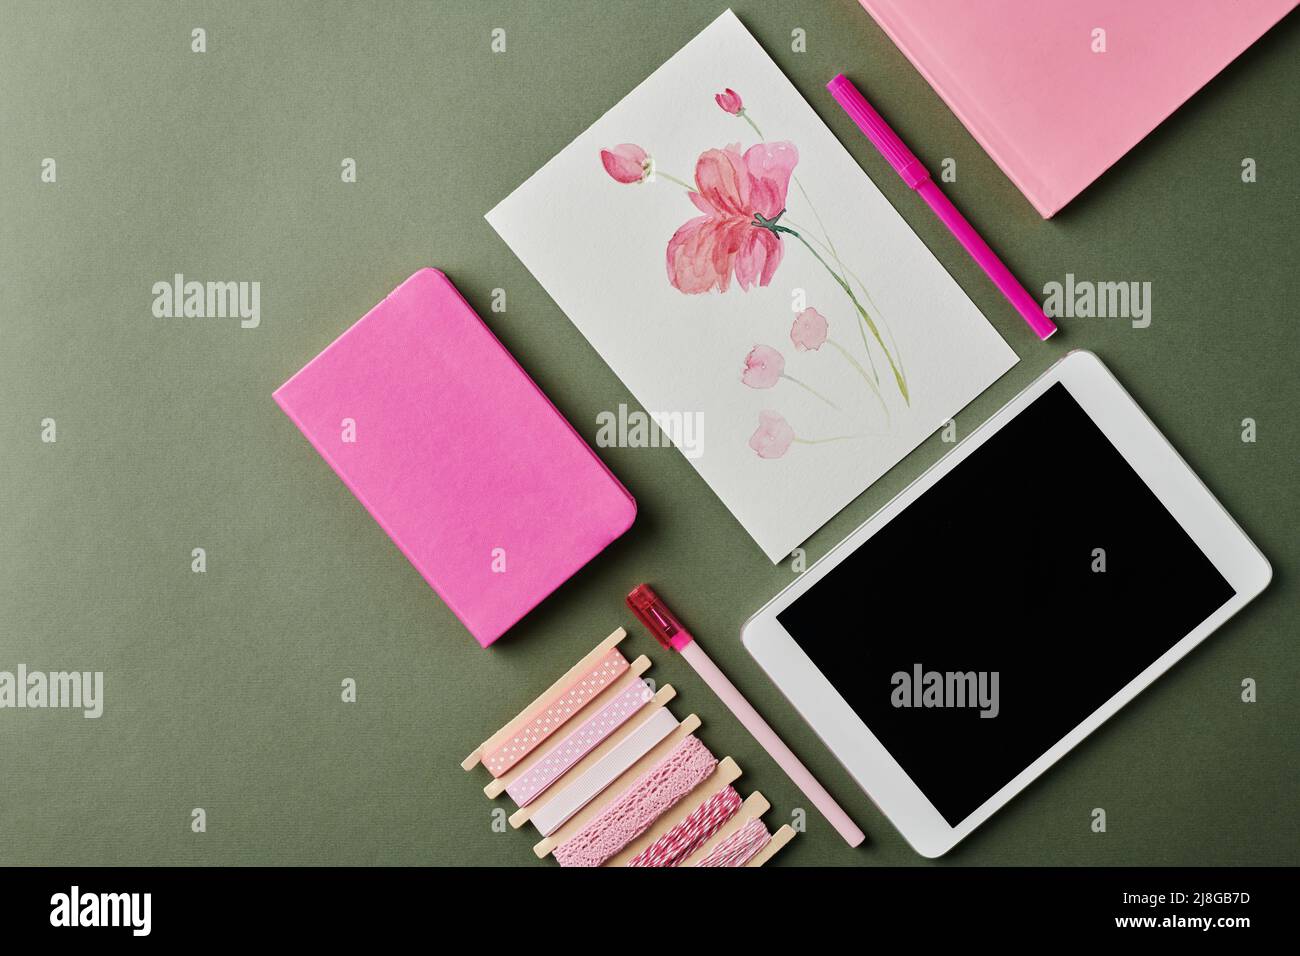 Fait partie de l'espace de travail de designer moderne avec dessin aquarelle de fleur, deux carnets roses, surligneur, stylo et tablette numérique Banque D'Images